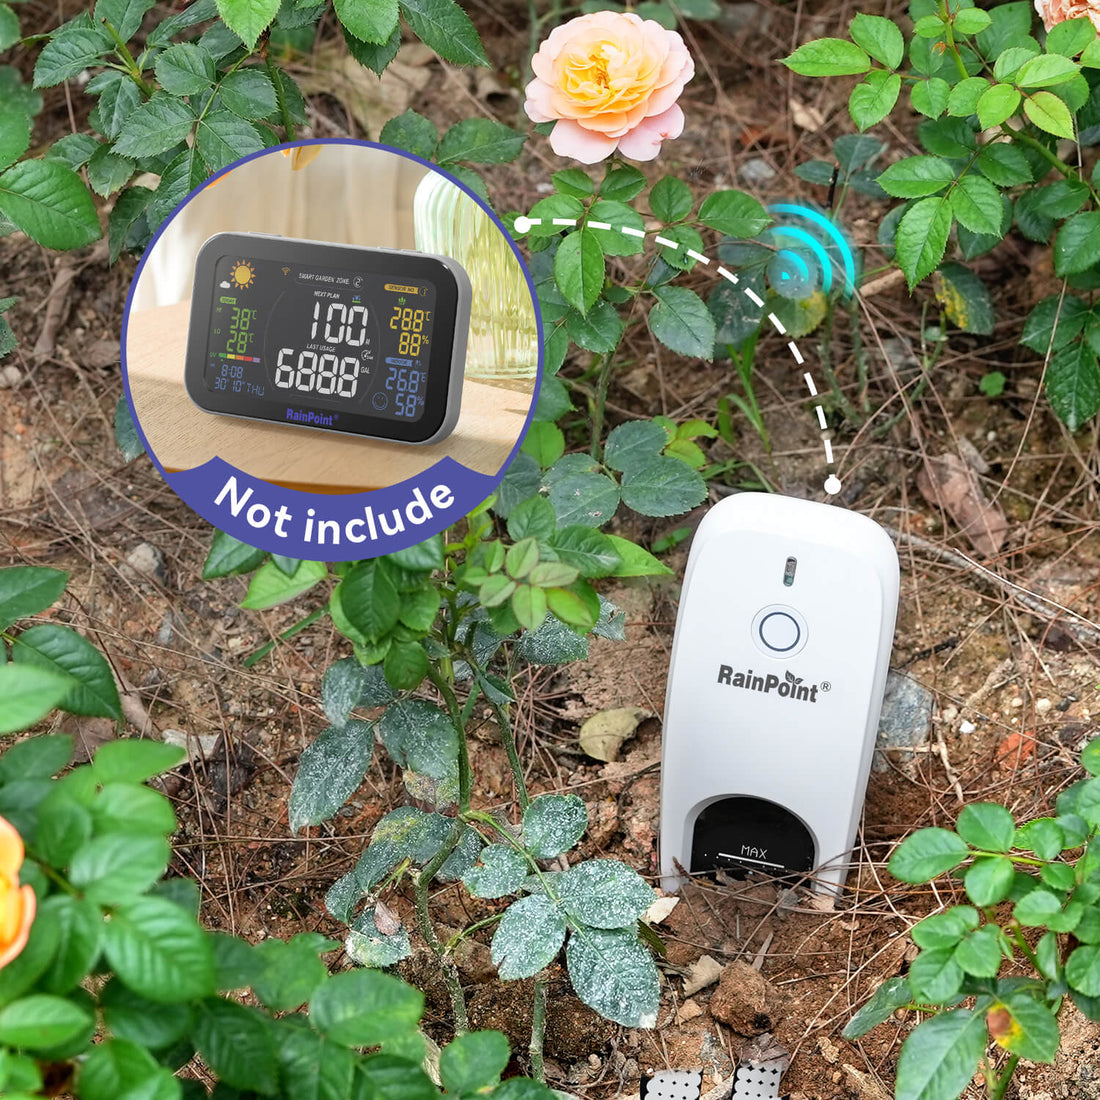 RainPoint Smart + Soil&amp; Moisture Sensor Model No: HCS021, Must be Used WiFi Hub, 2.4Ghz WiFi Only